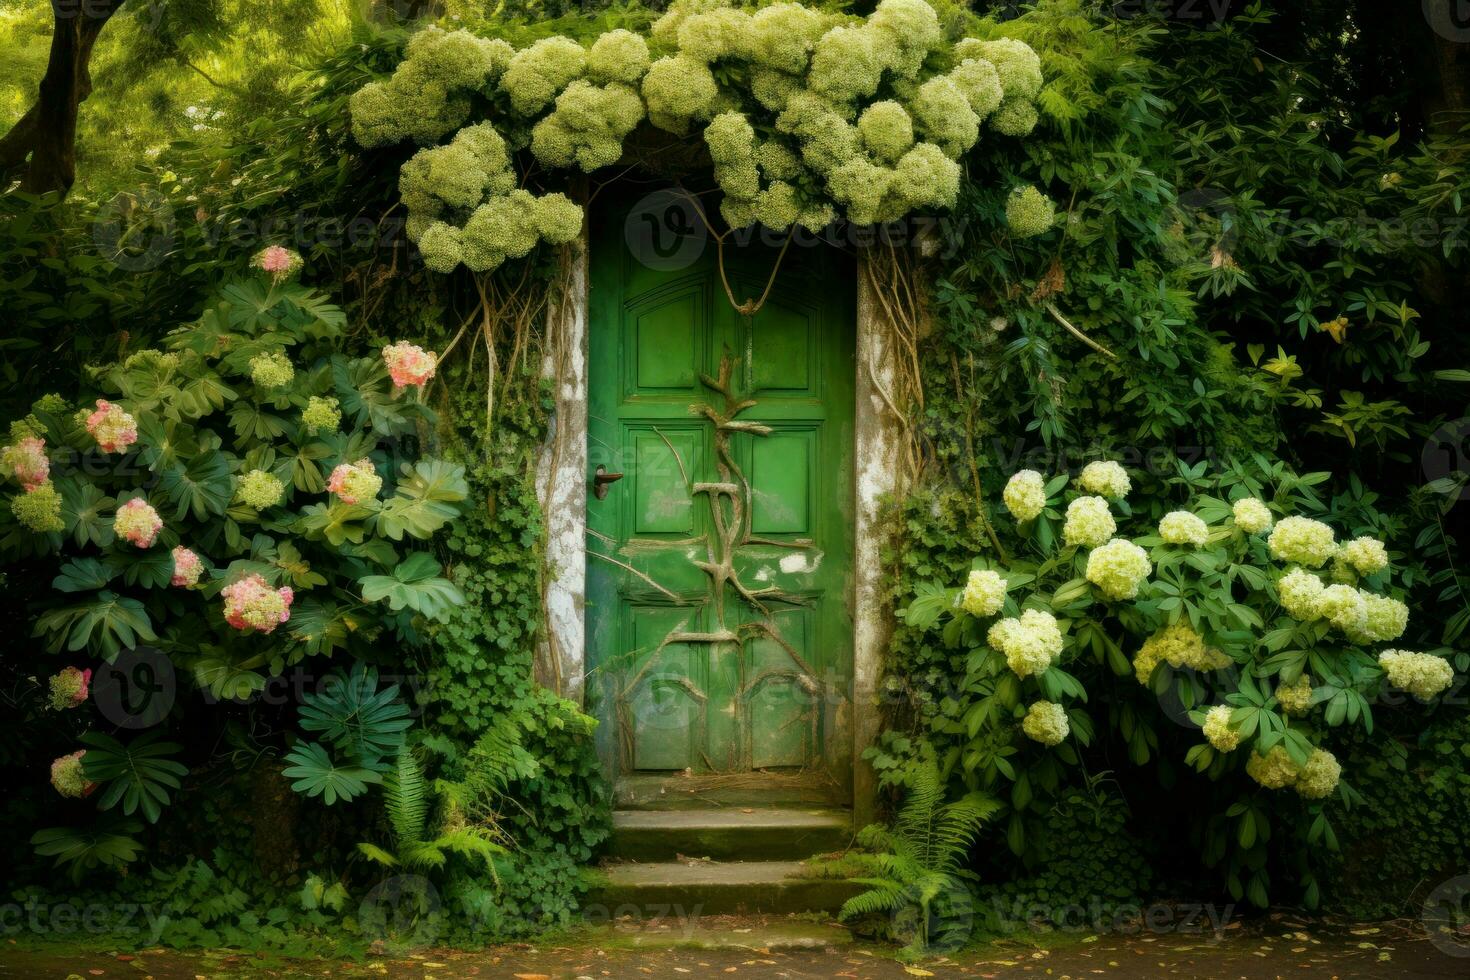 robusto porta verde jardim. gerar ai foto